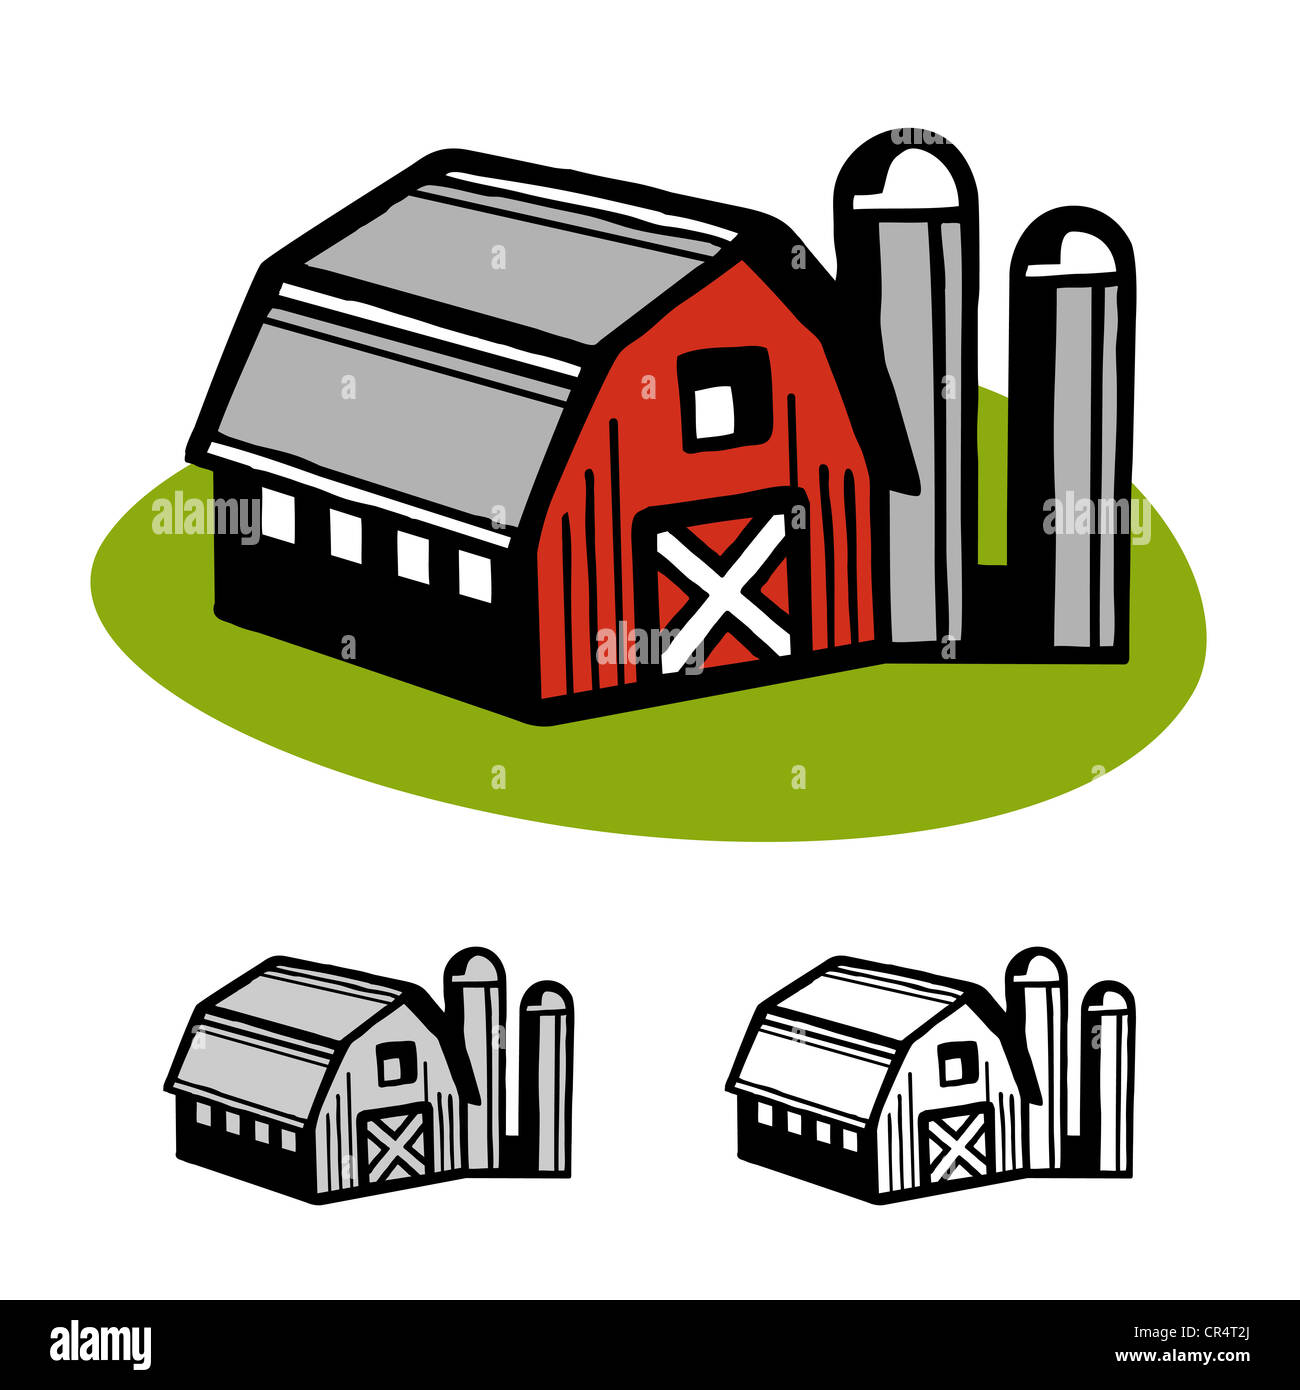 Grange de ferme et silo cartoon illustration design vector Banque D'Images